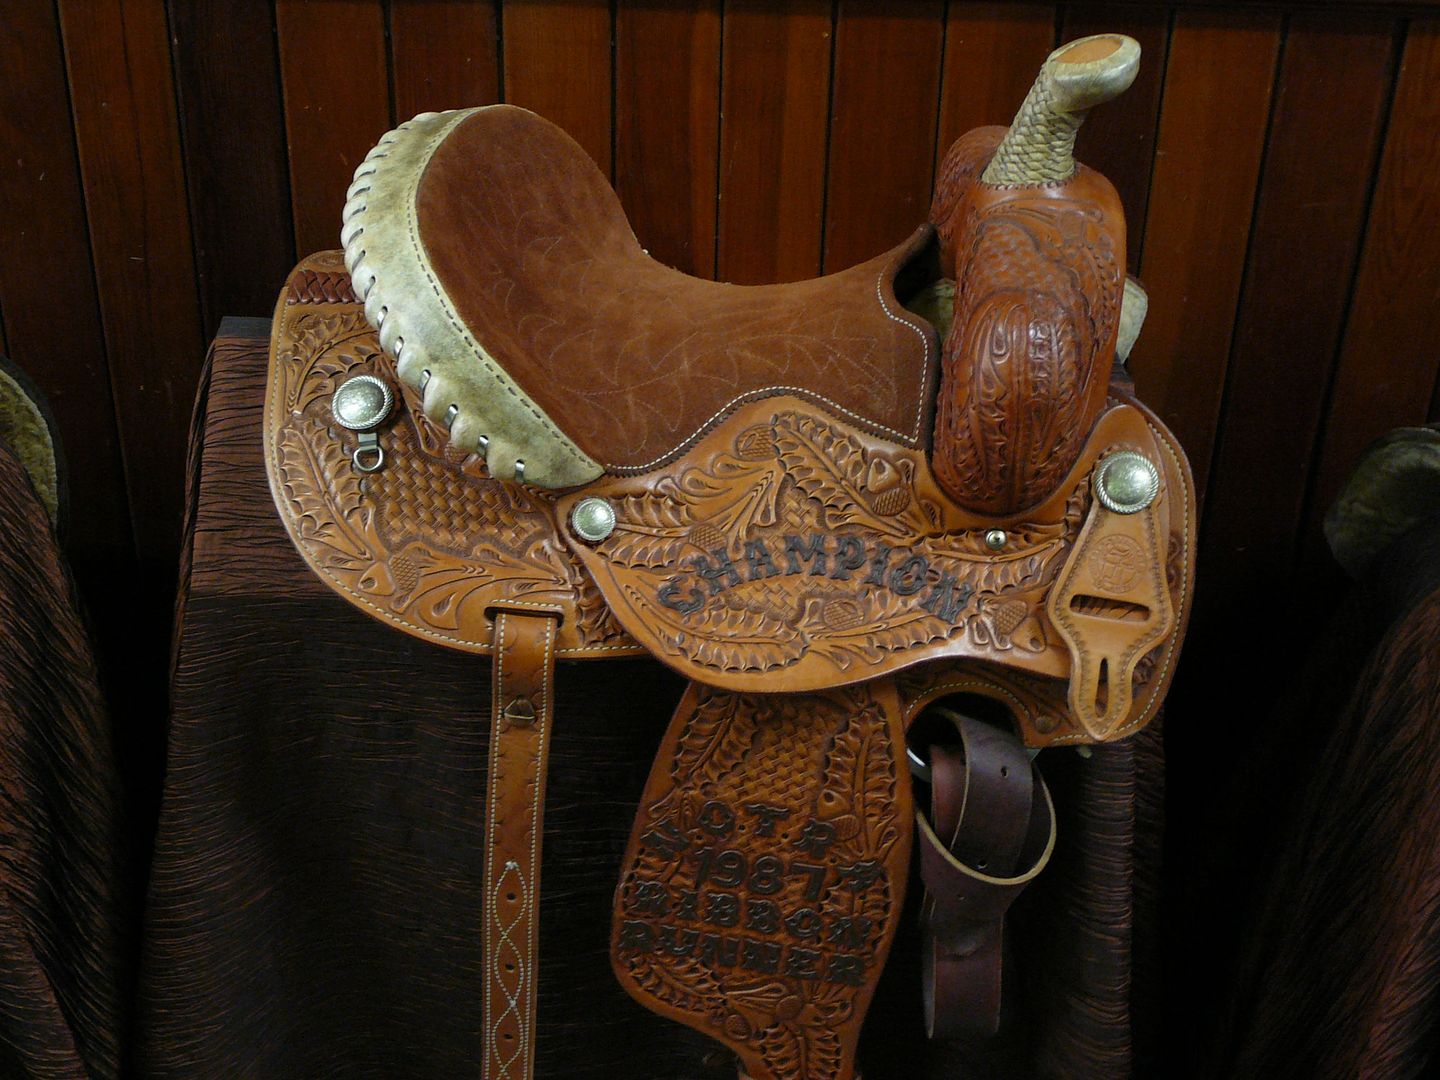 Saddle